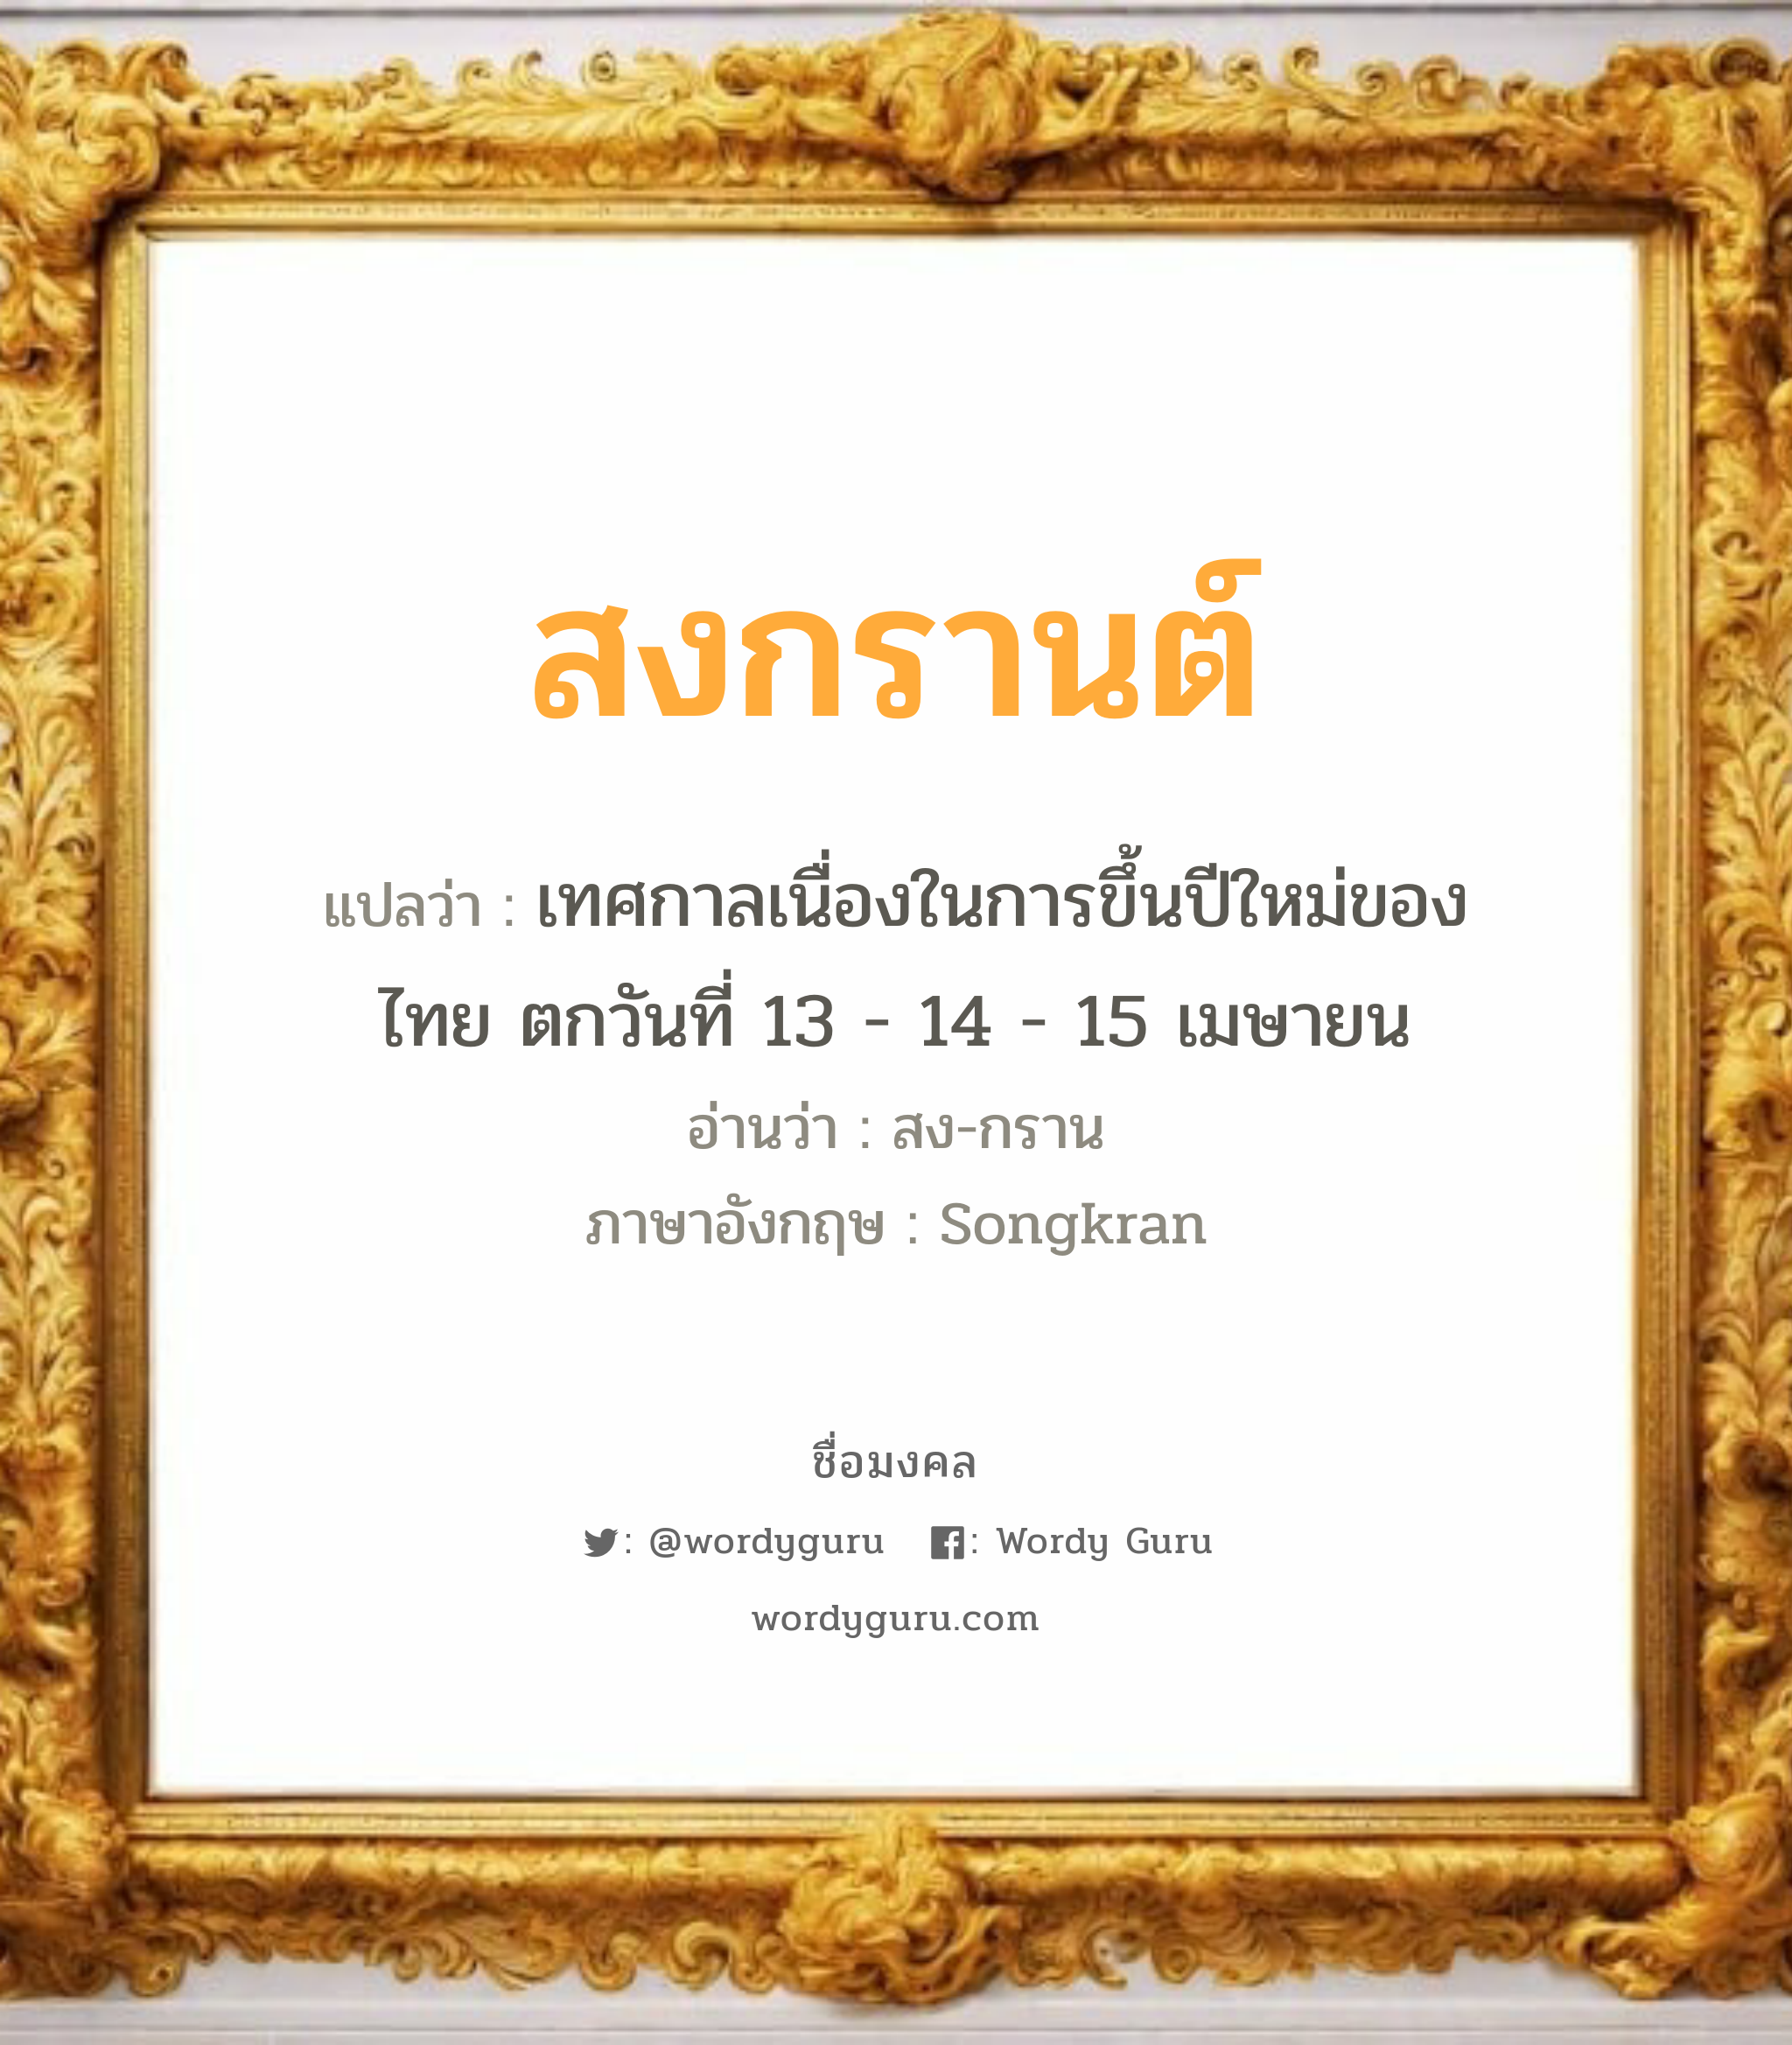 สงกรานต์ แปลว่า? สำหรับคนเกิดวันพุธกลางวัน, ชื่อมงคล สงกรานต์ วิเคราะห์ชื่อ สงกรานต์ แปลว่า เทศกาลเนื่องในการขึ้นปีใหม่ของไทย ตกวันที่ 13 - 14 - 15 เมษายน อ่านว่า สง-กราน ภาษาอังกฤษ Songkran เพศ เหมาะกับ ผู้ชาย, ลูกชาย หมวด วันมงคล วันพุธกลางวัน, วันพุธกลางคืน, วันเสาร์